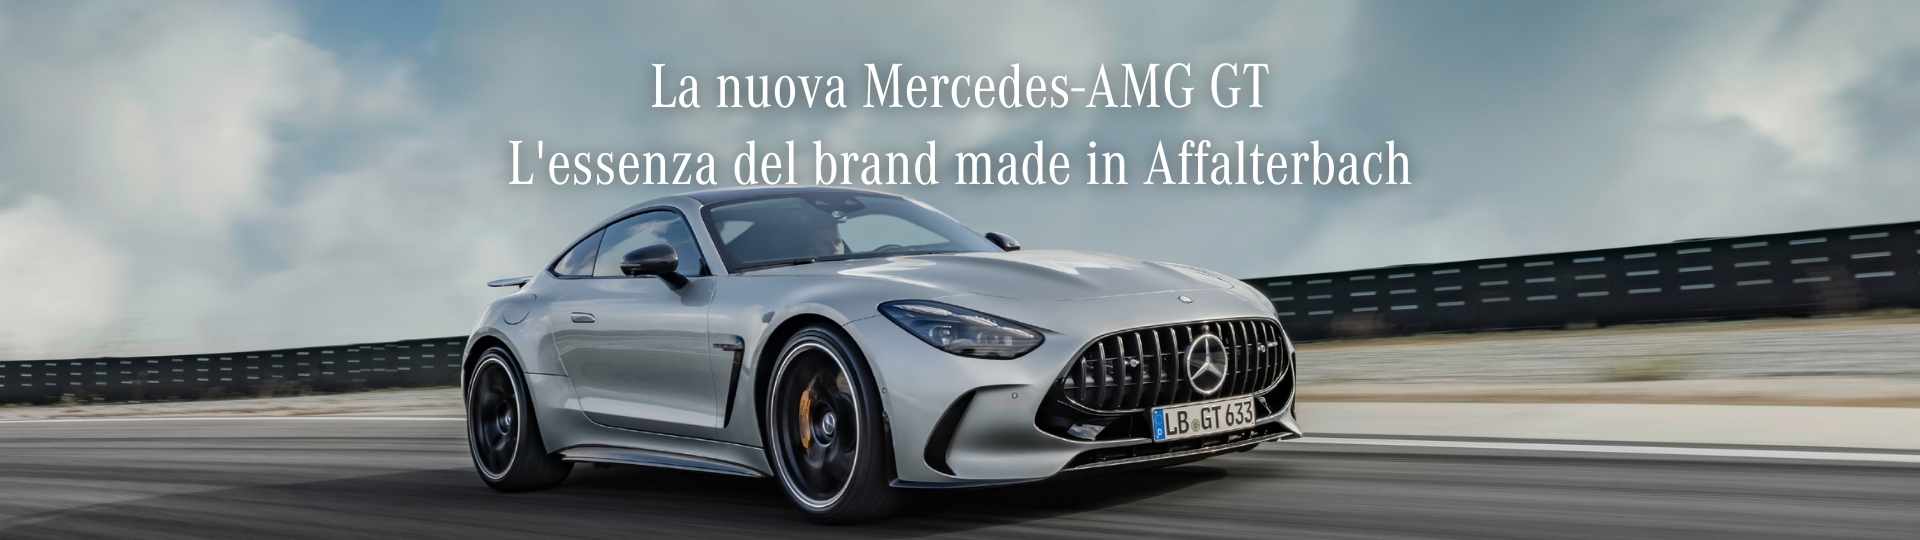 nuova AMG GT.jpg